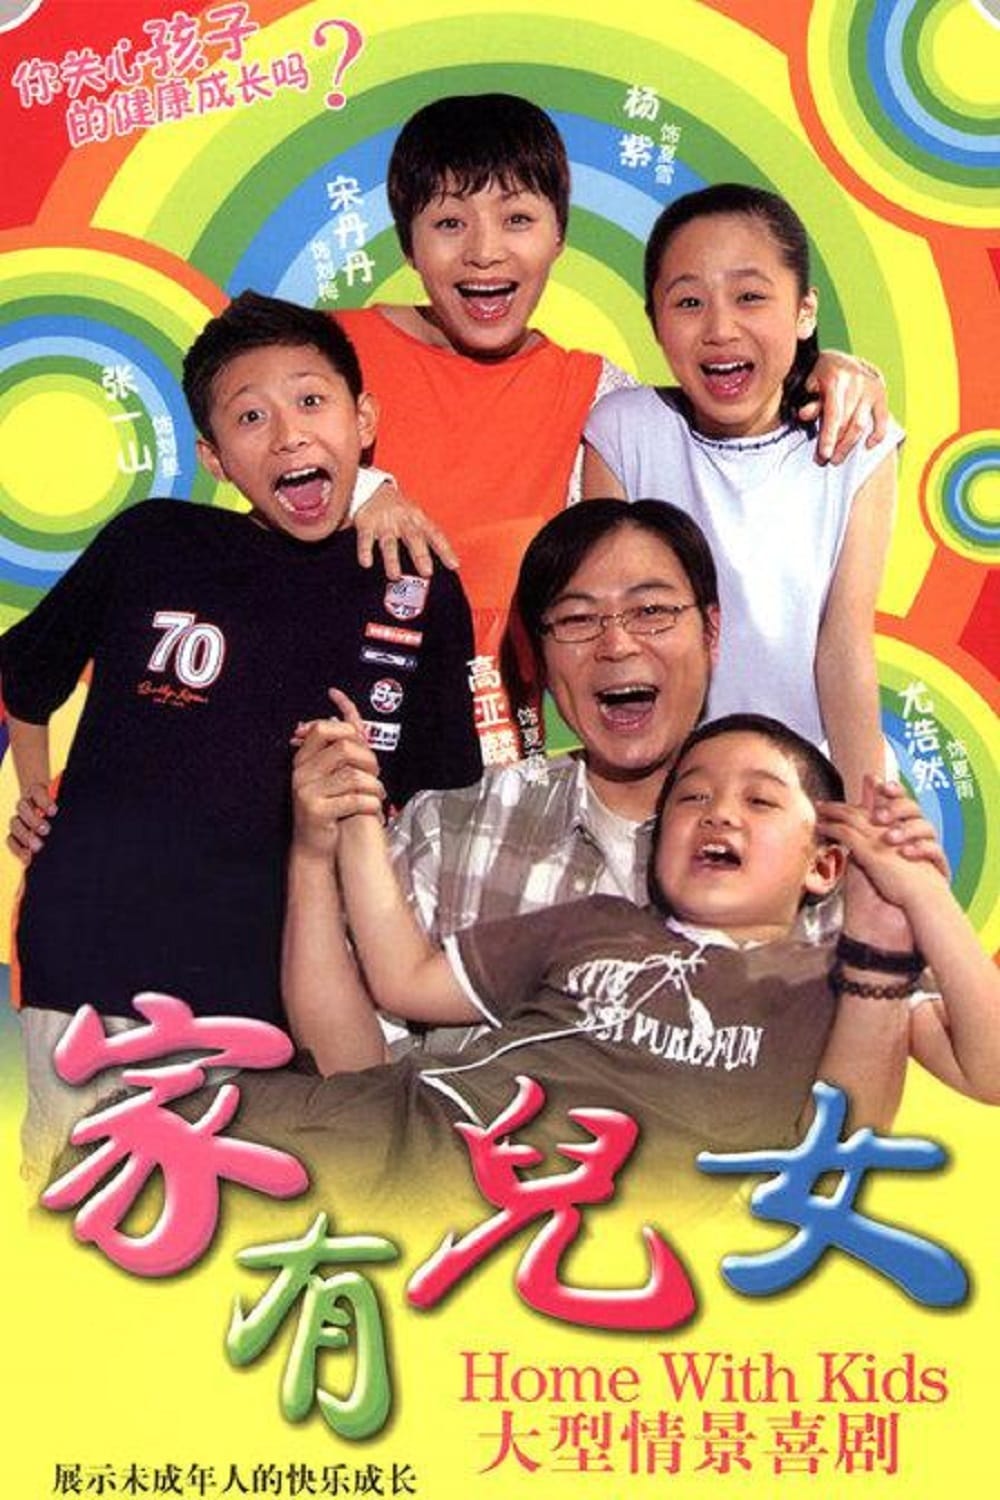 Phim của Dương Tử: Nhà có trai có gái - Home With Kids (2005)